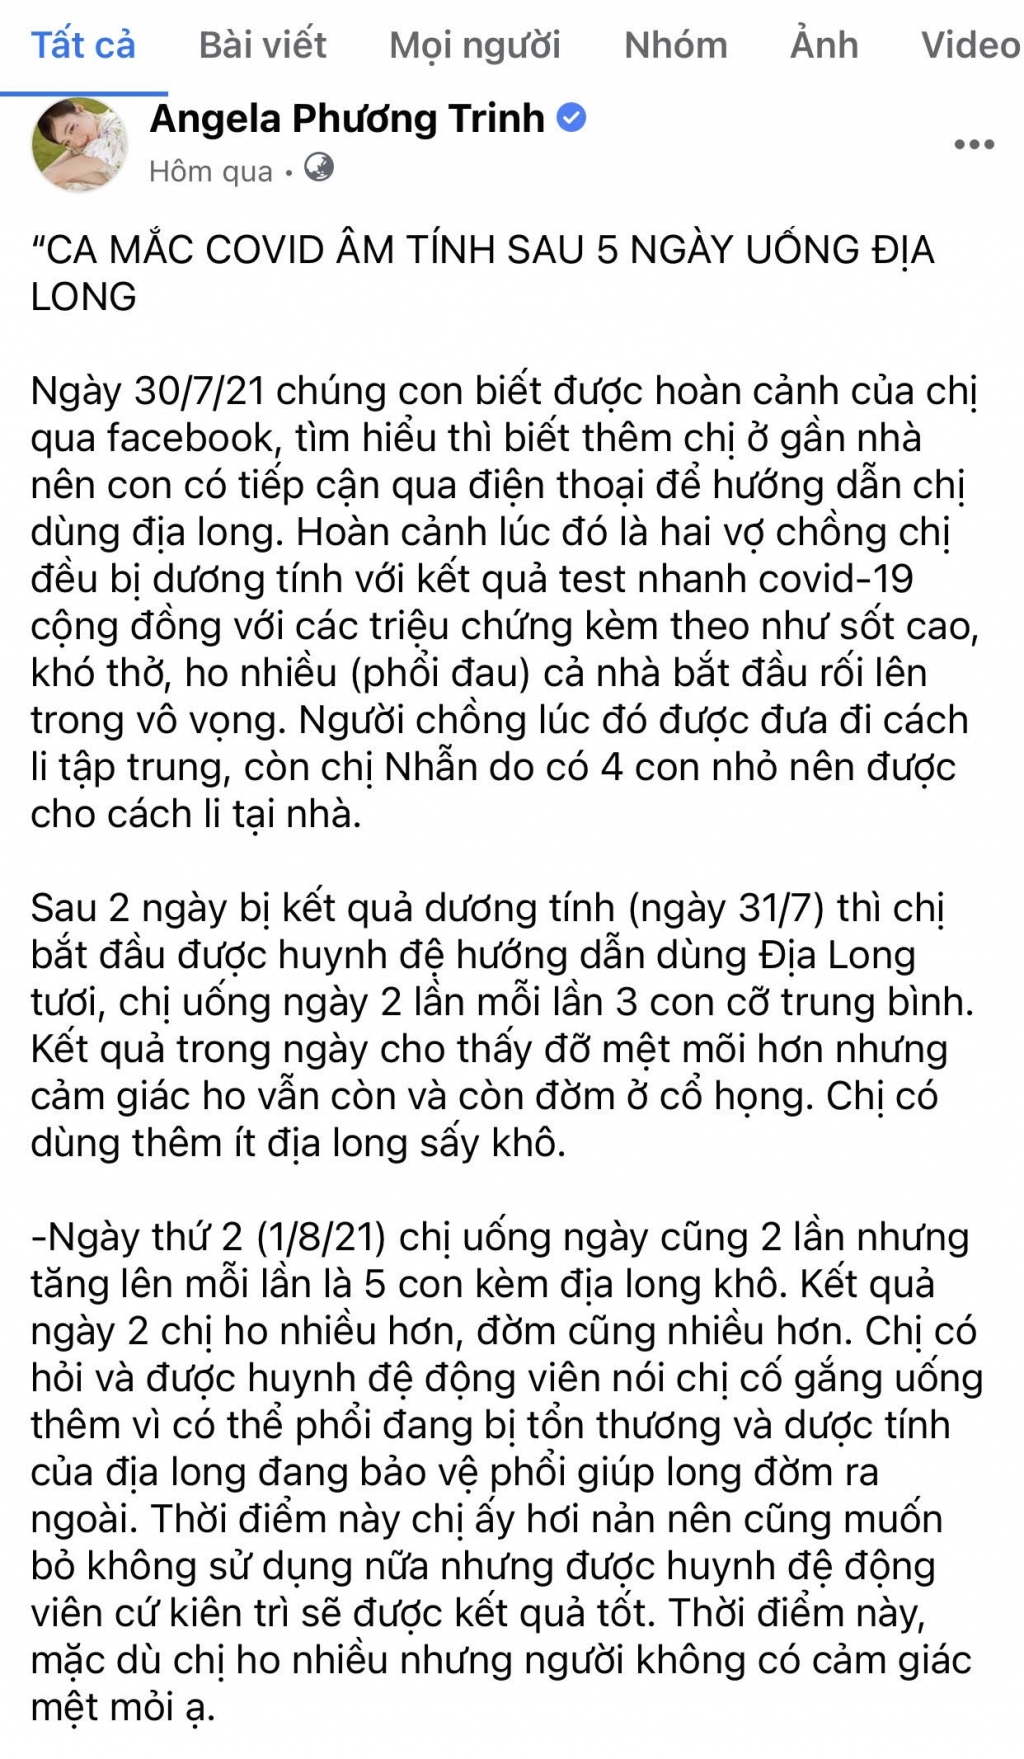 Angela Phương Trinh bị xử phạt vì đăng tài thông tin giun đất chữa được Covid-19